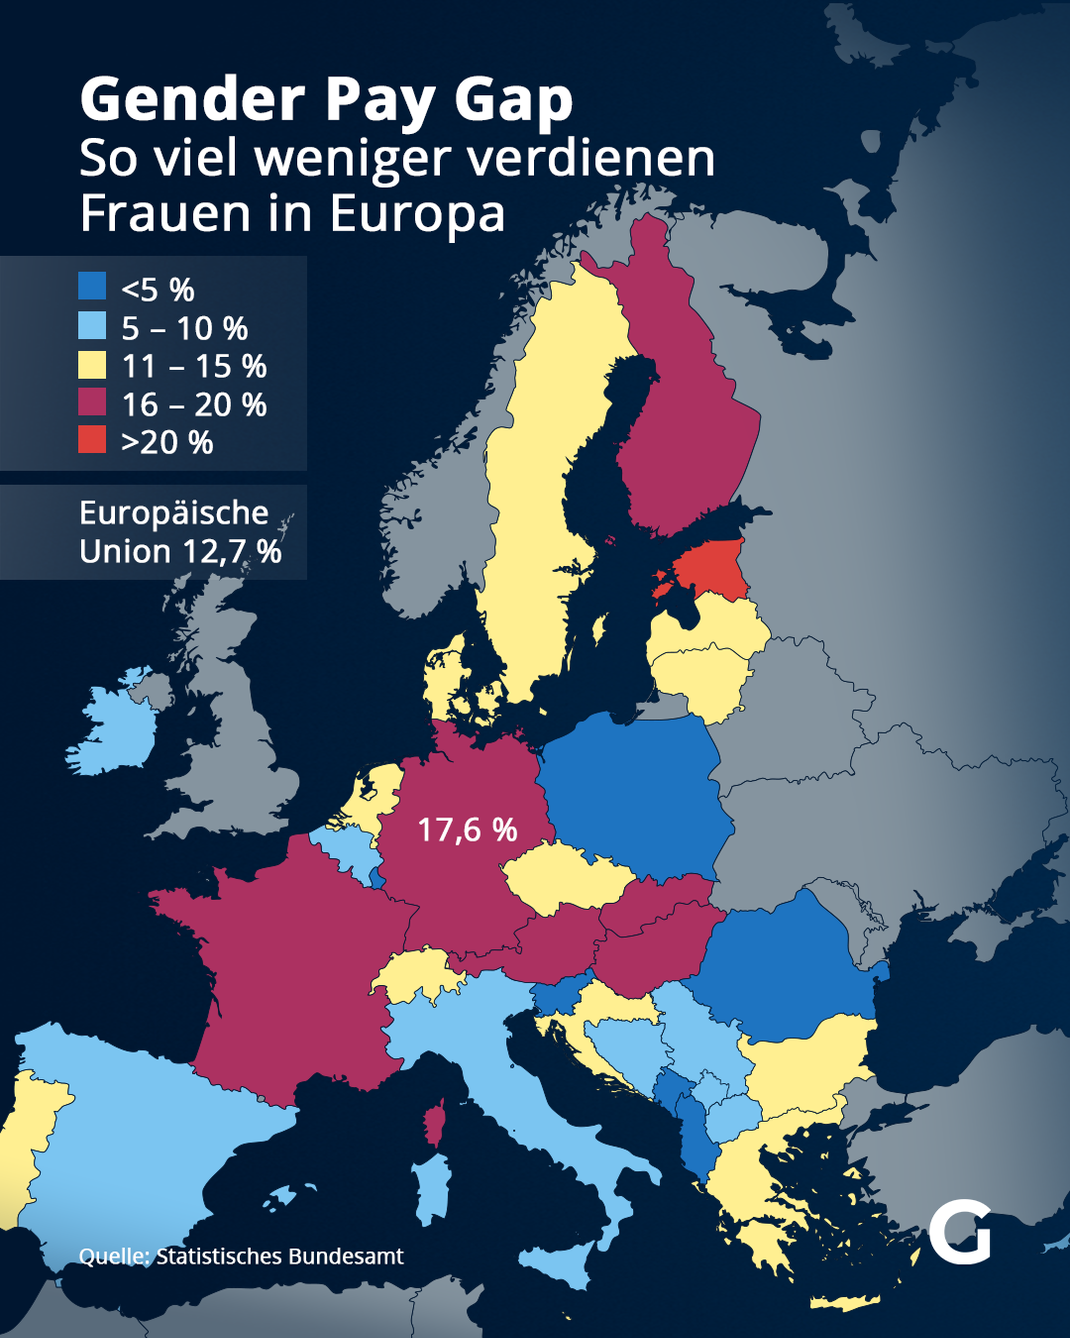 Gender Pay Gap: So viel weniger verdienen Frauen in europäischen Ländern im Vergleich zu Männern.&nbsp;